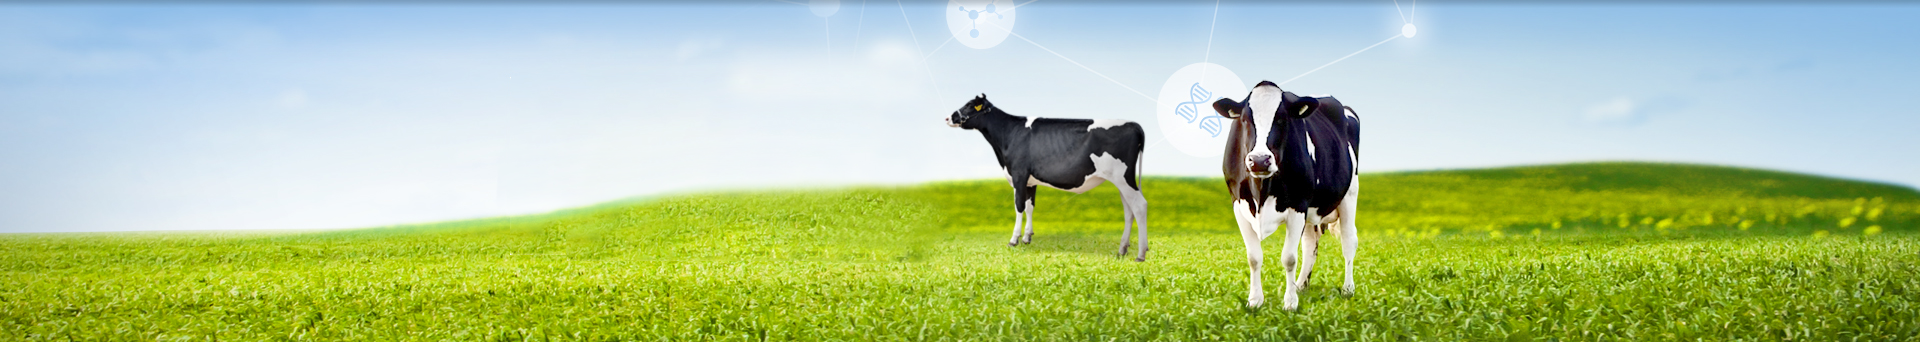 젖소개량은 미래를 위한 투자입니다. 대한민국 축산업의 미래! 주식회사 덕창과 함께하세요.